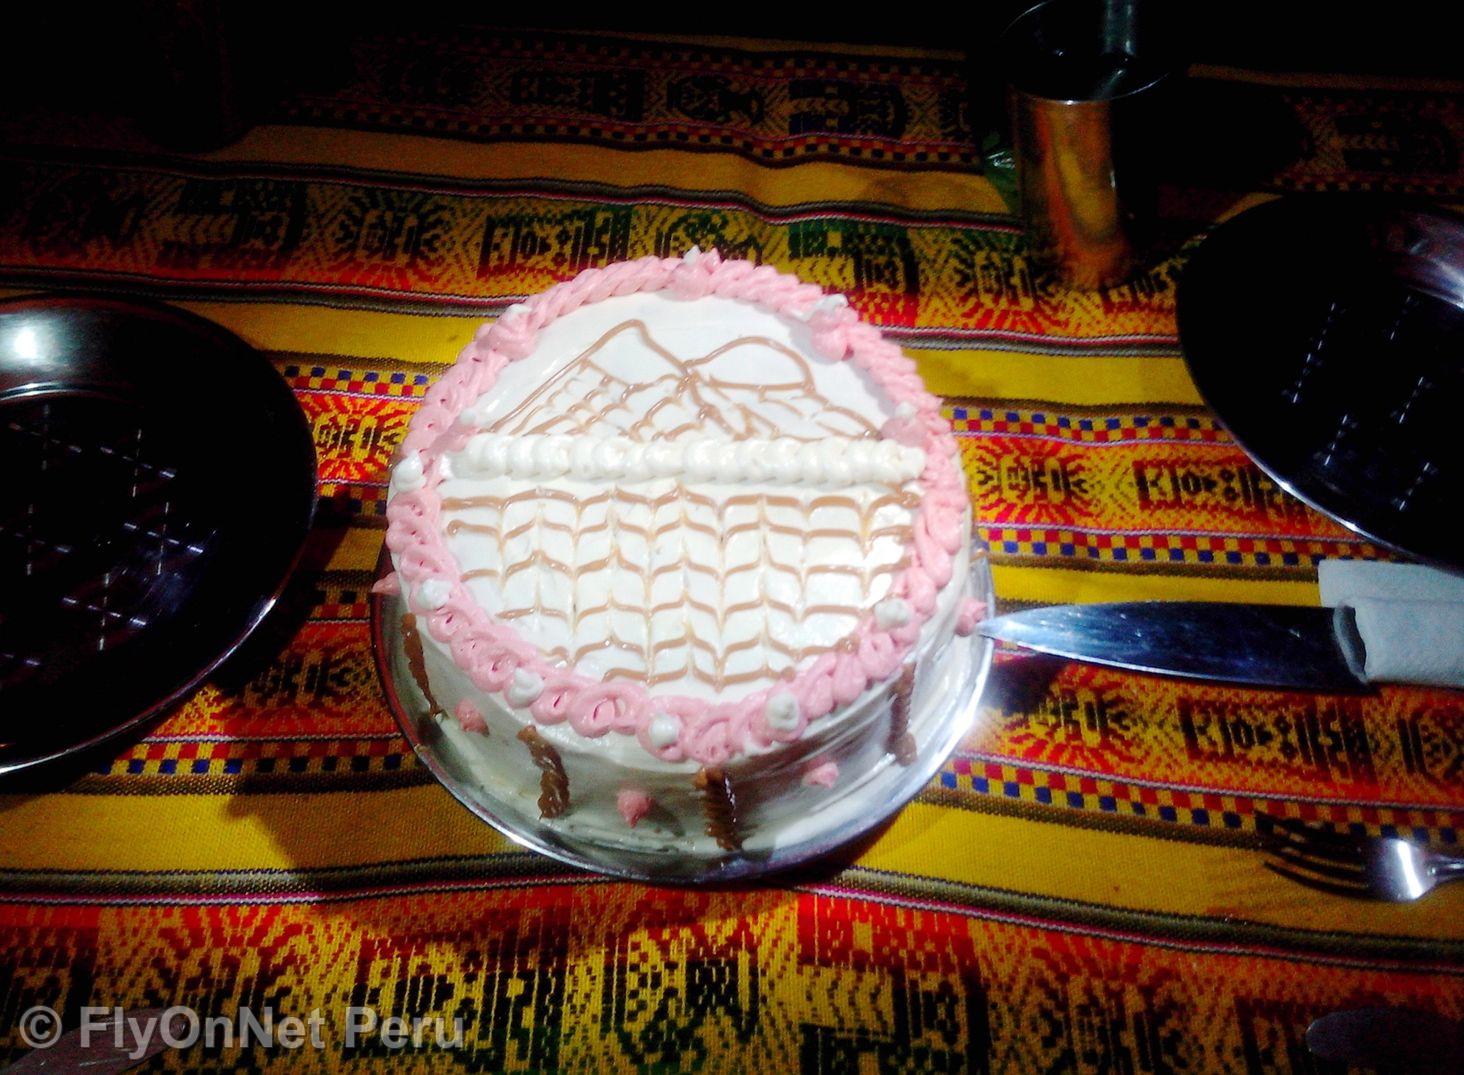 Álbum de fotos: Torta de cumpleaños durante el trek, Camino Inca